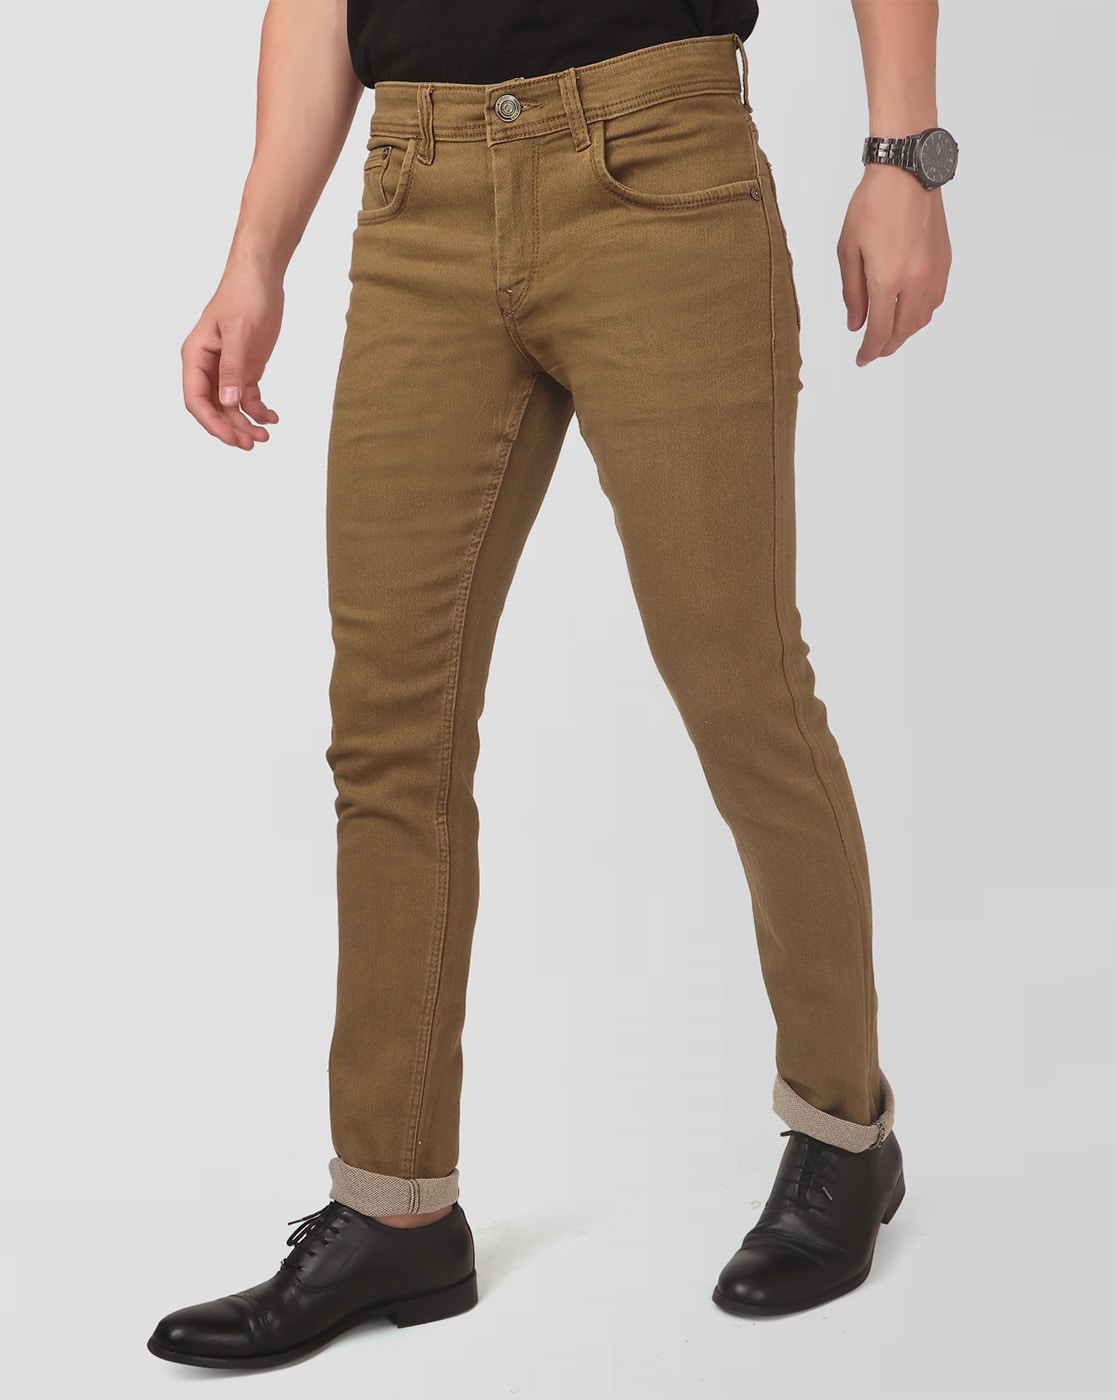 Share 83+ khaki denim pants latest